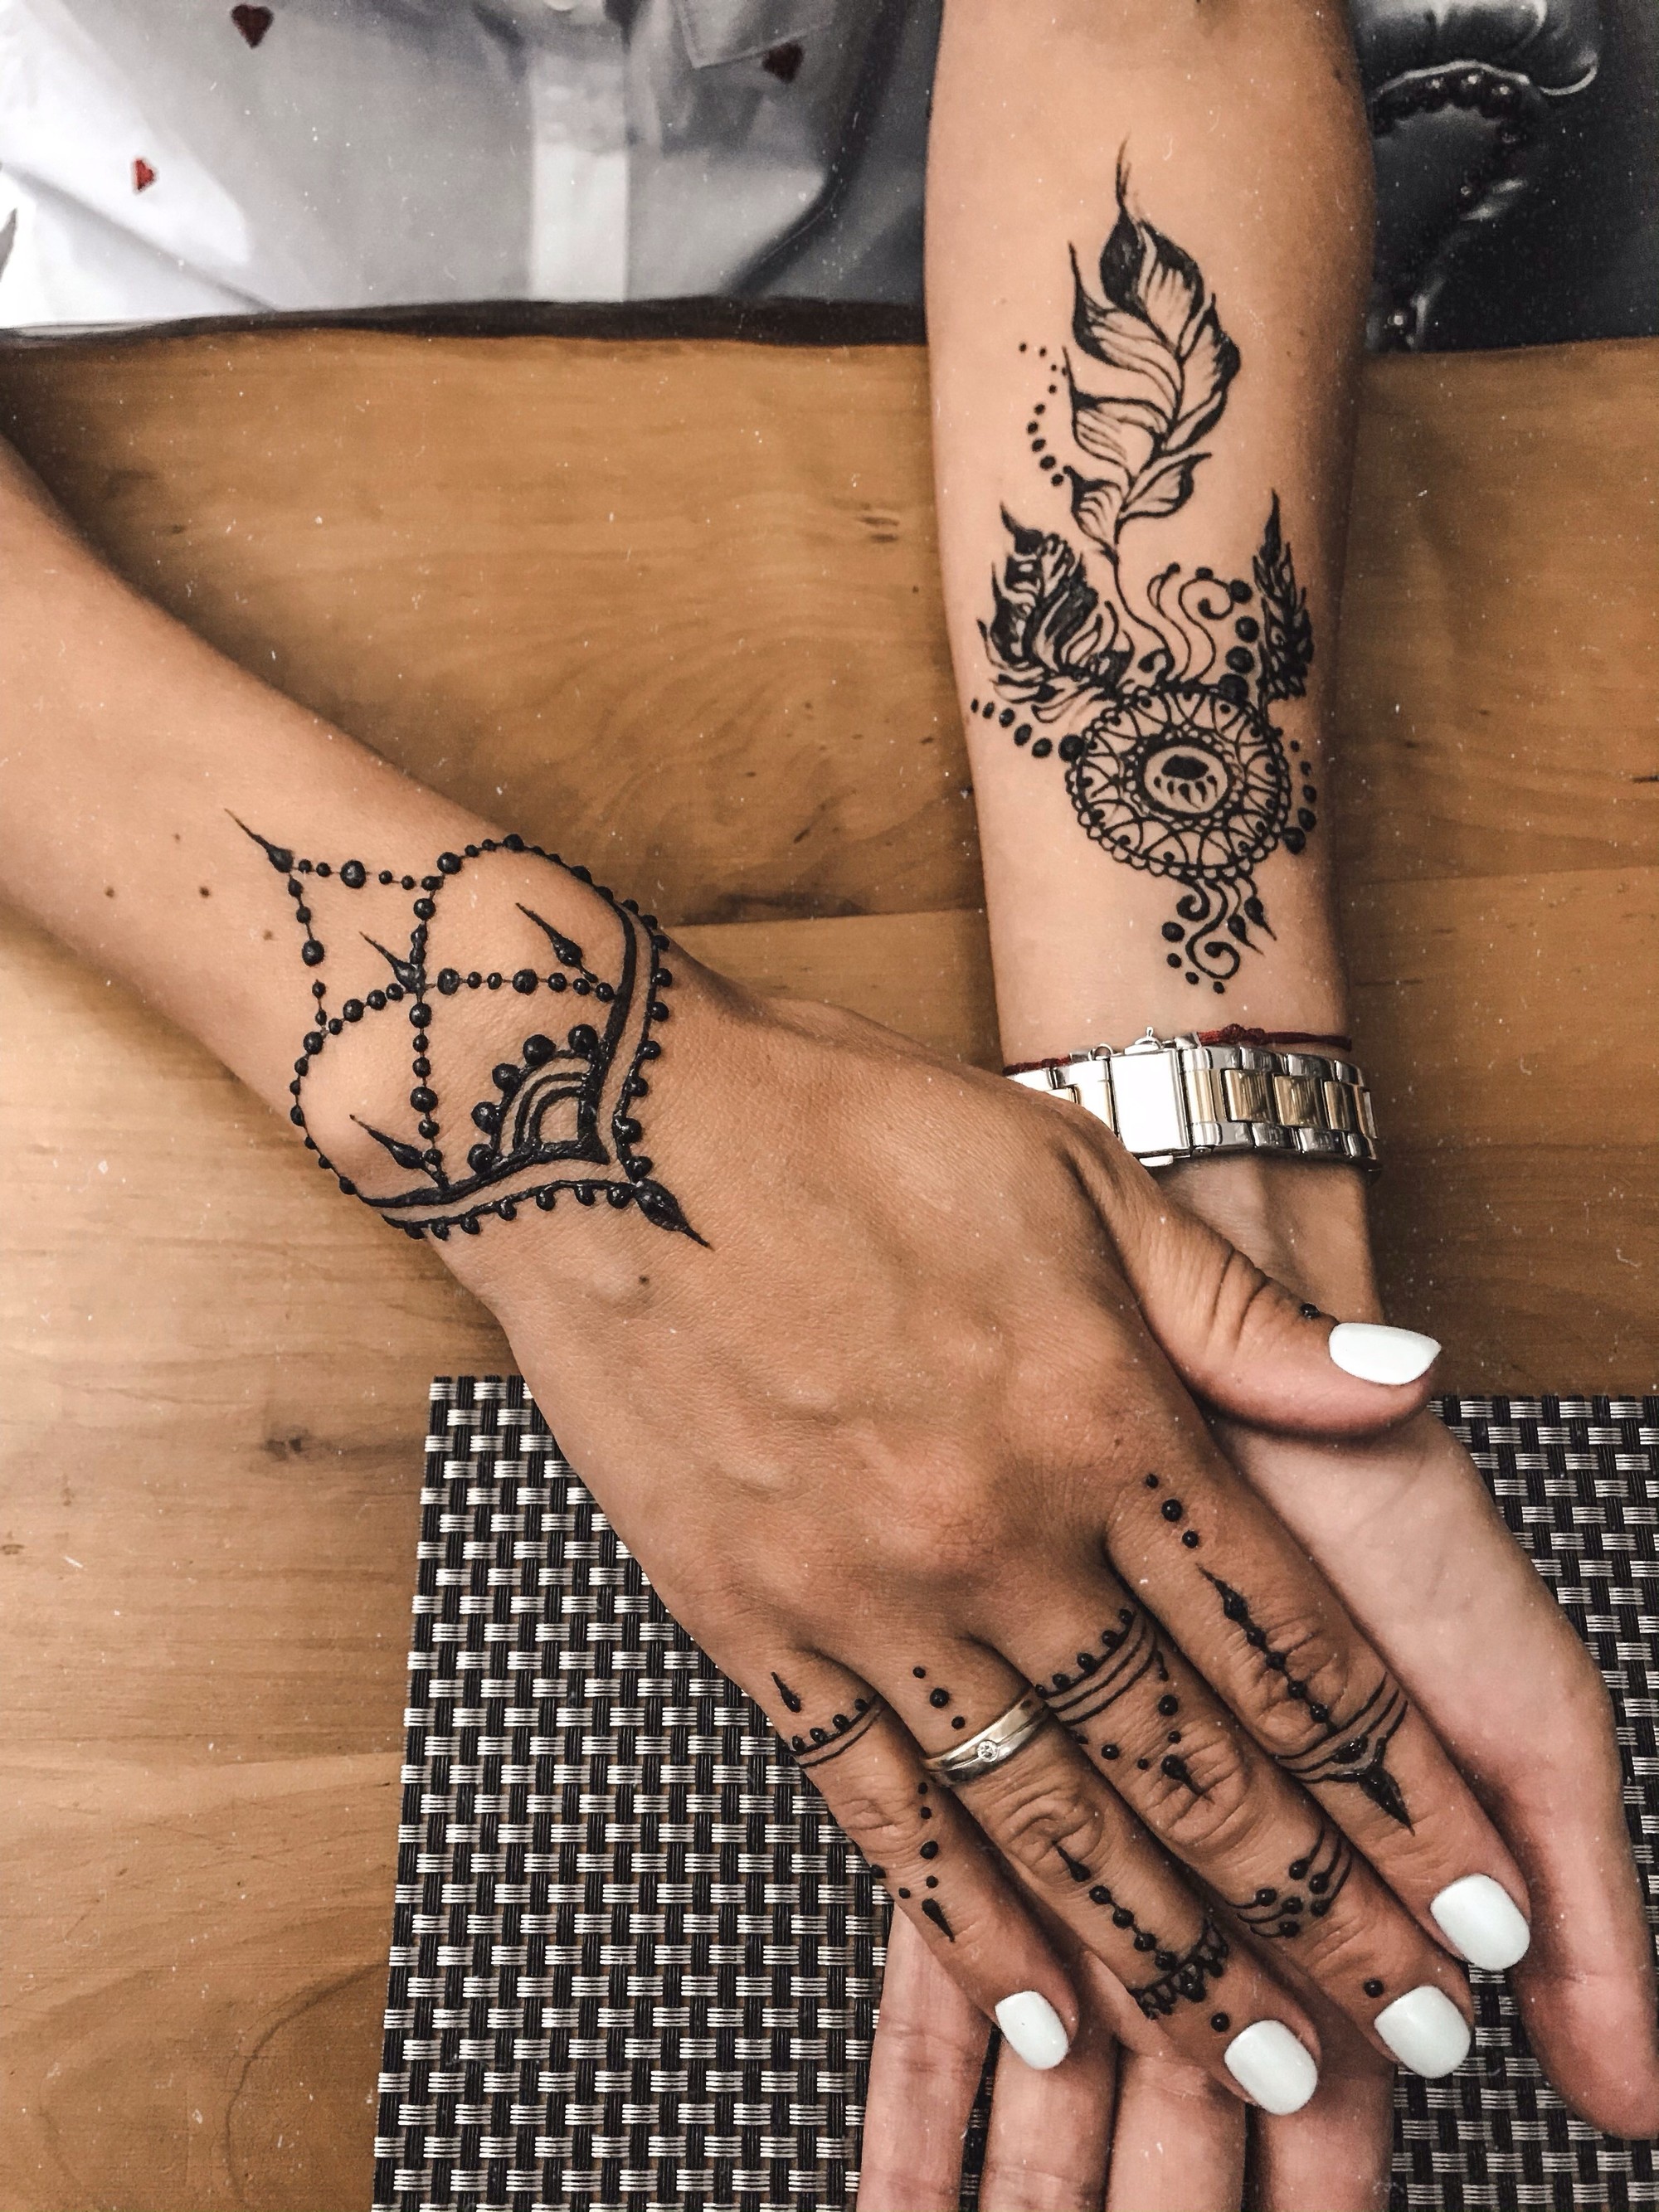 Henna art